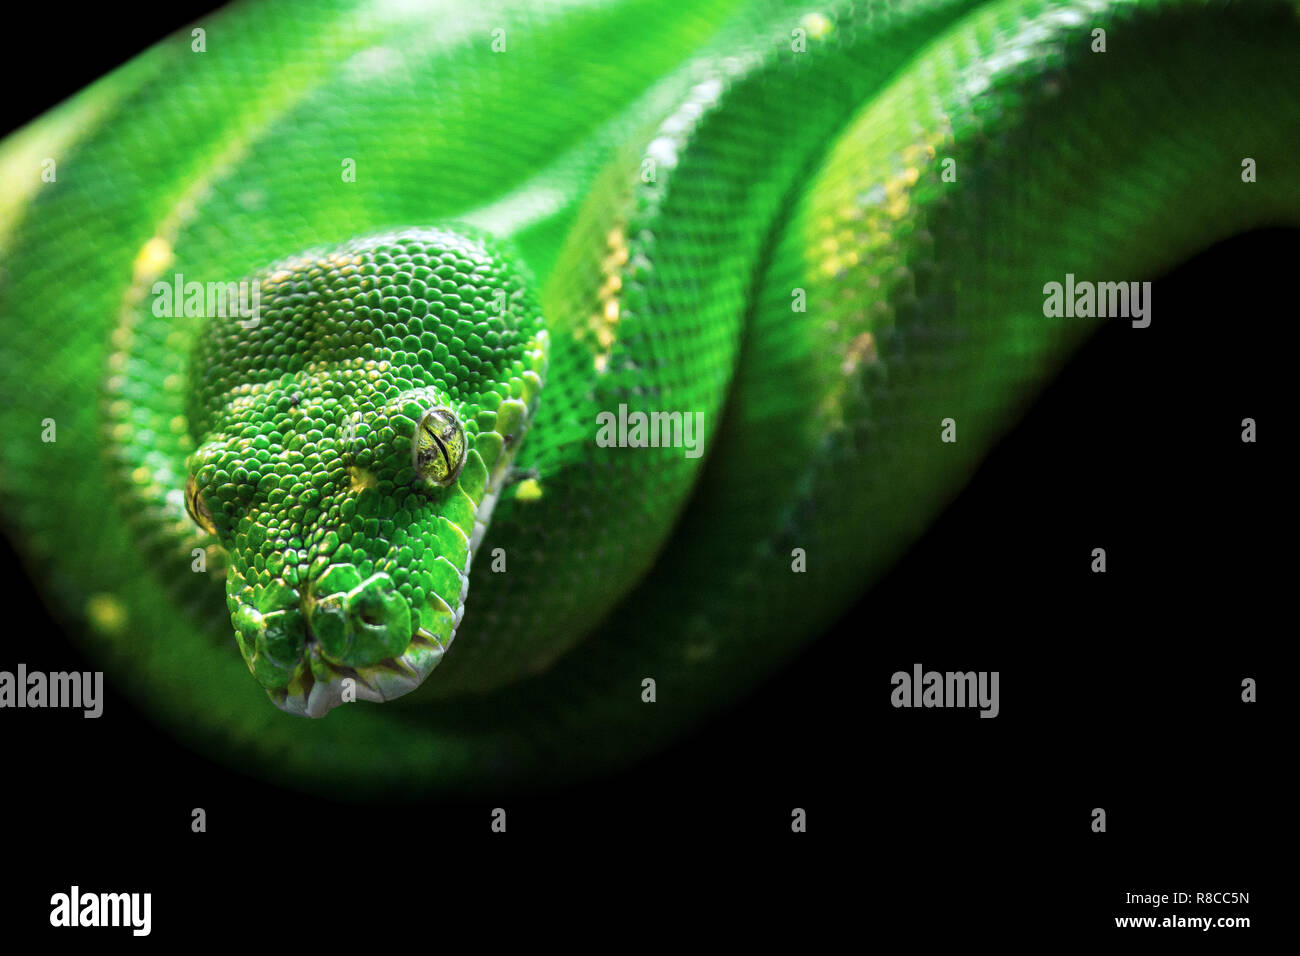 Green Tree python avec la texture de la peau et yeux jaunes sur fond noir. Puissant, vert, le zoo, le vivarium concept. Banque D'Images